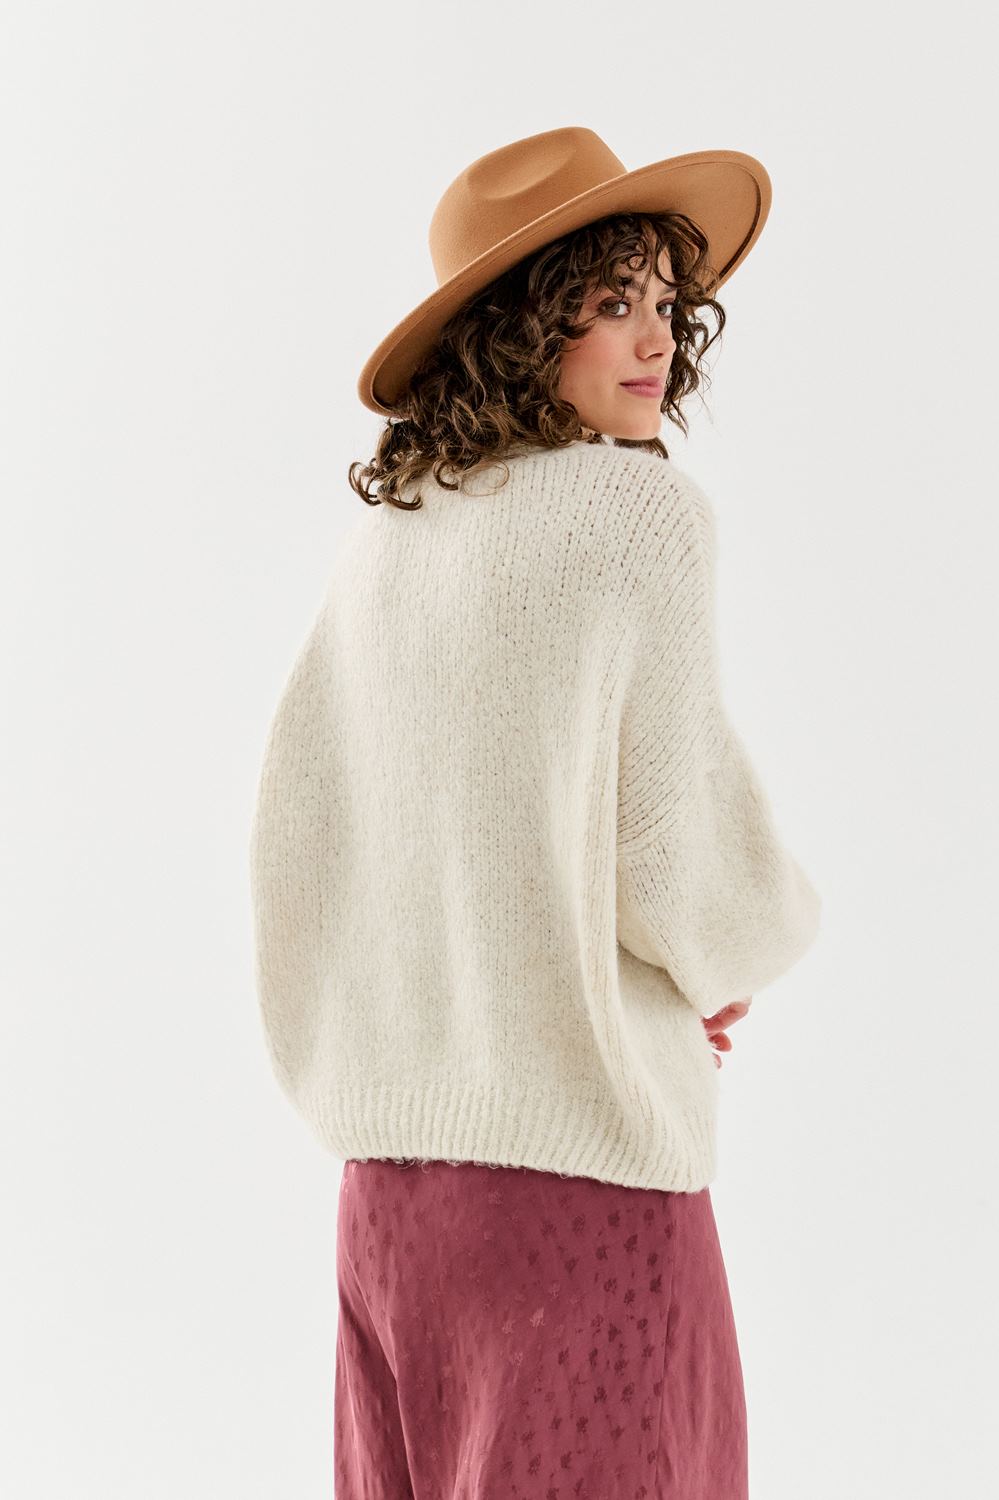 Marshmallow sweater